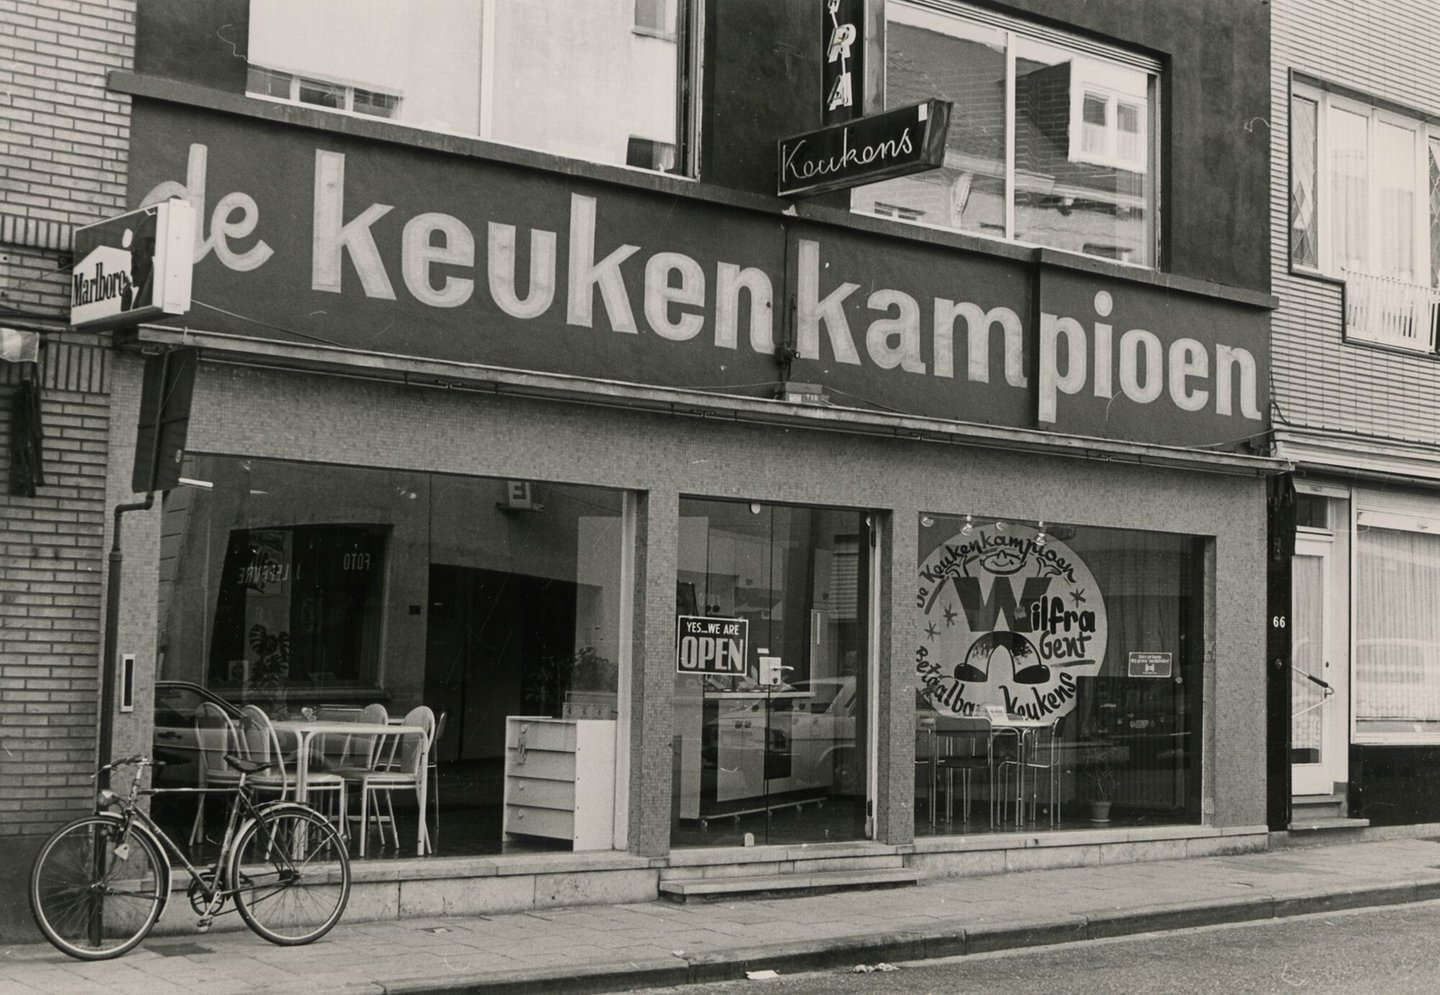 Etalage van De Keukenkampioen, een meubelwinkel van keukens in Gent